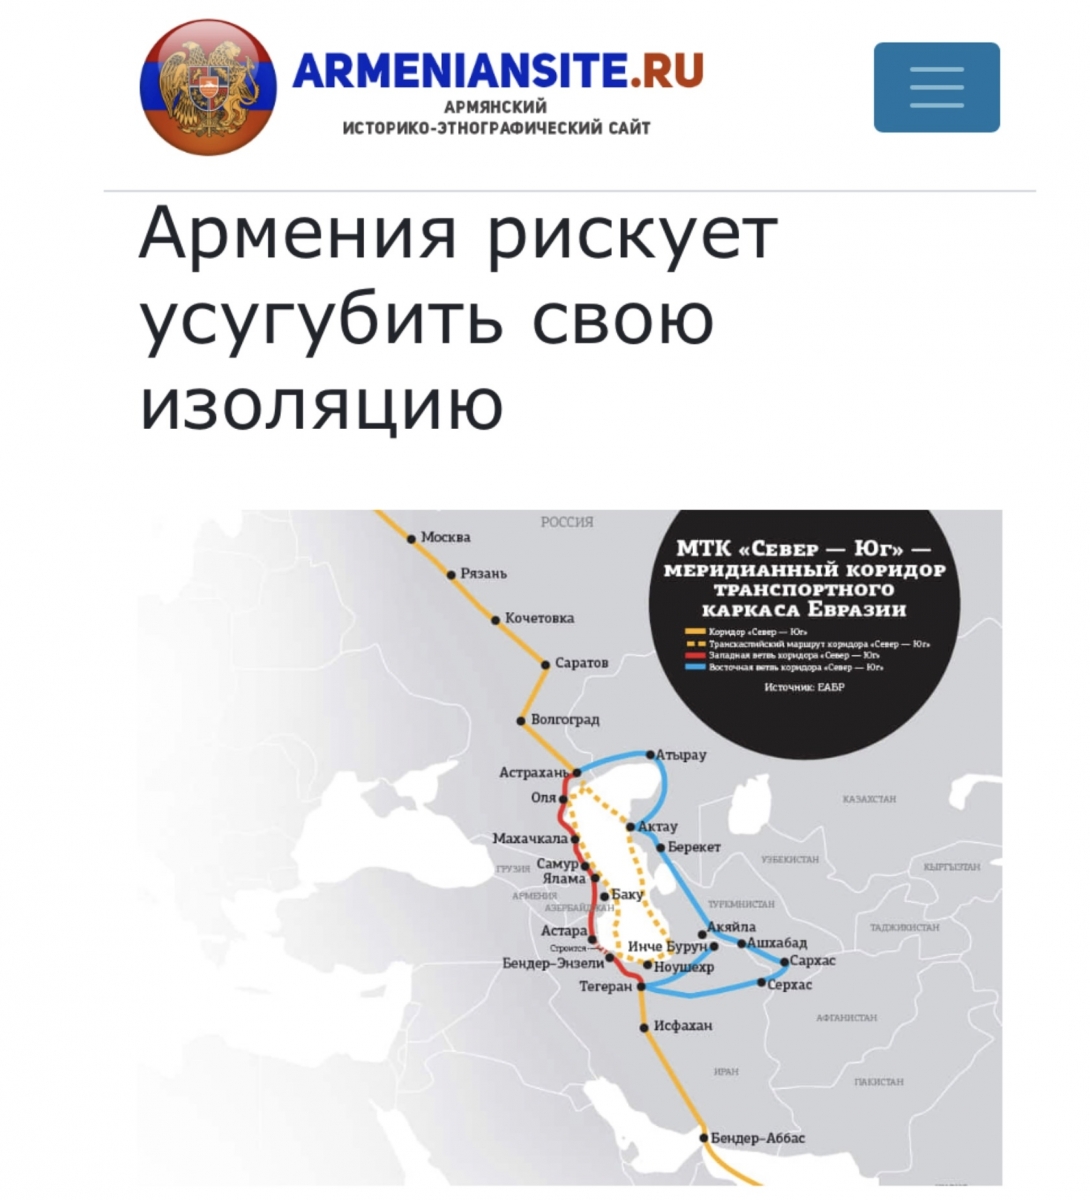    armeniansite.ru